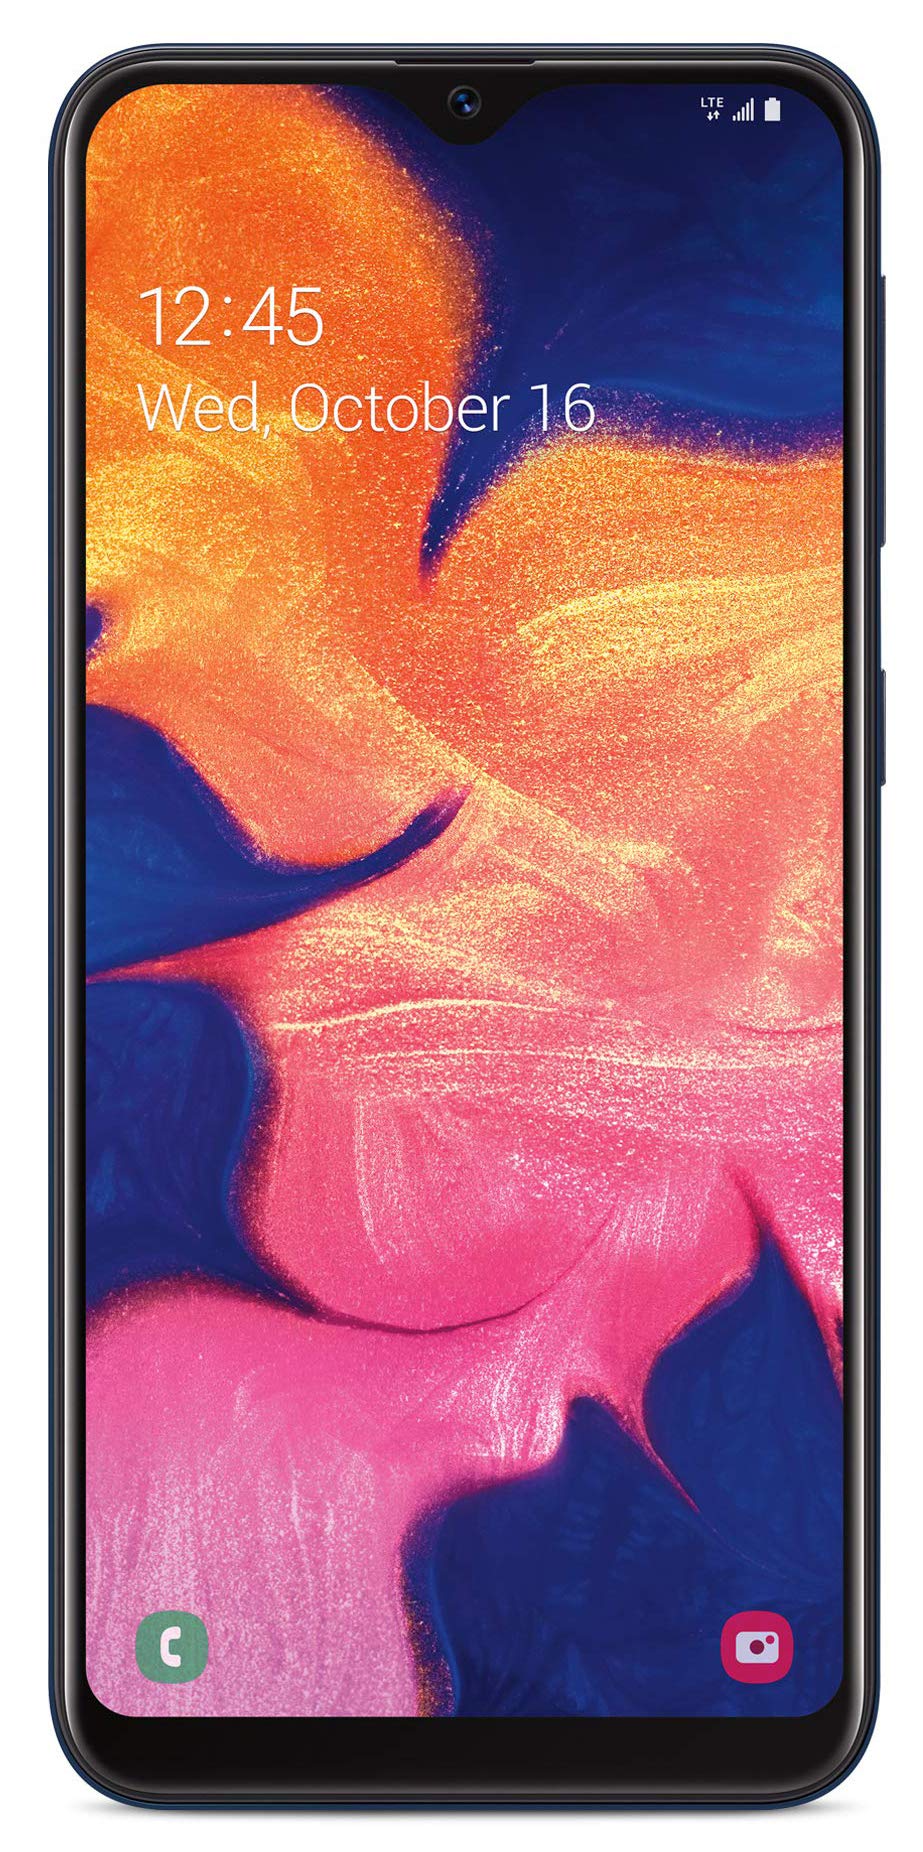 Net10 Samsung Galaxy A10e 4G LTE Prepaid Smartphone (Locked) - Black - 32GB - SIM Card Included - CDMA